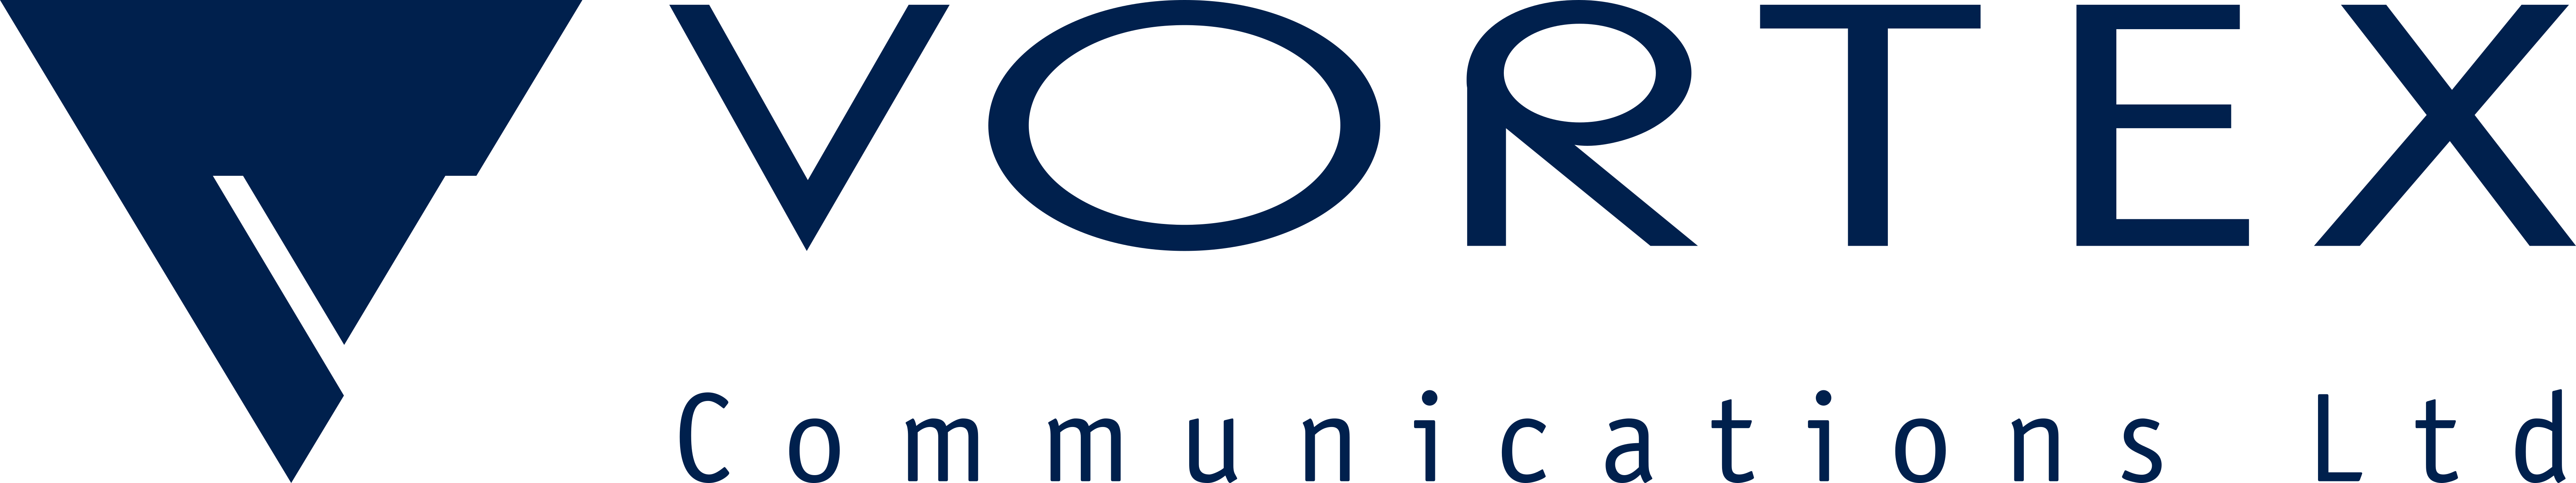 Vortex Communications Logo - Horizontal